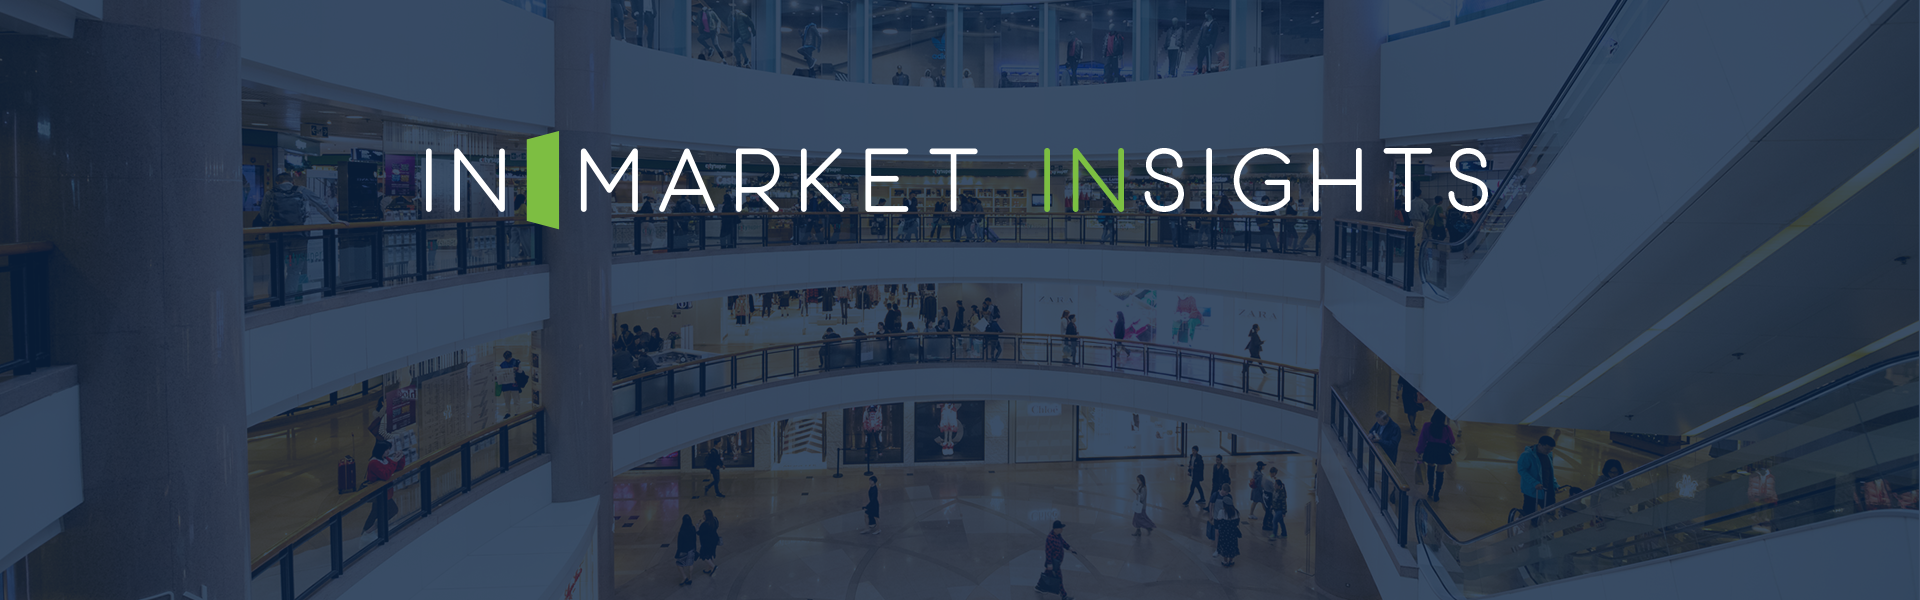 Inmarket Insights Header-mall